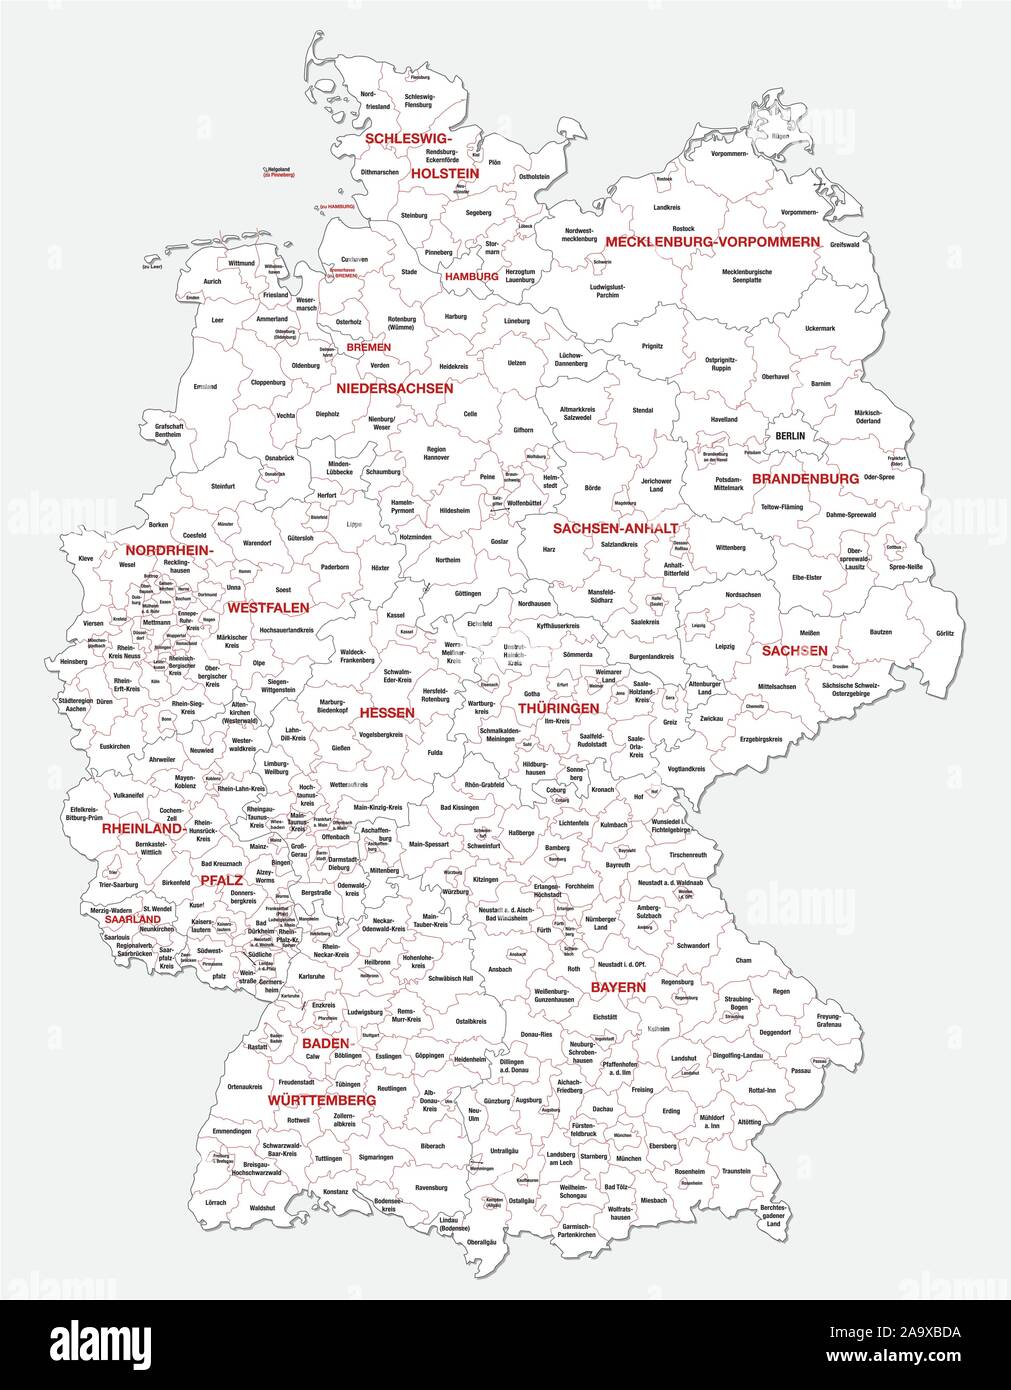 Politica e amministrativa di mappa della Germania recentemente rivisto 2019 in bianco e nero Illustrazione Vettoriale